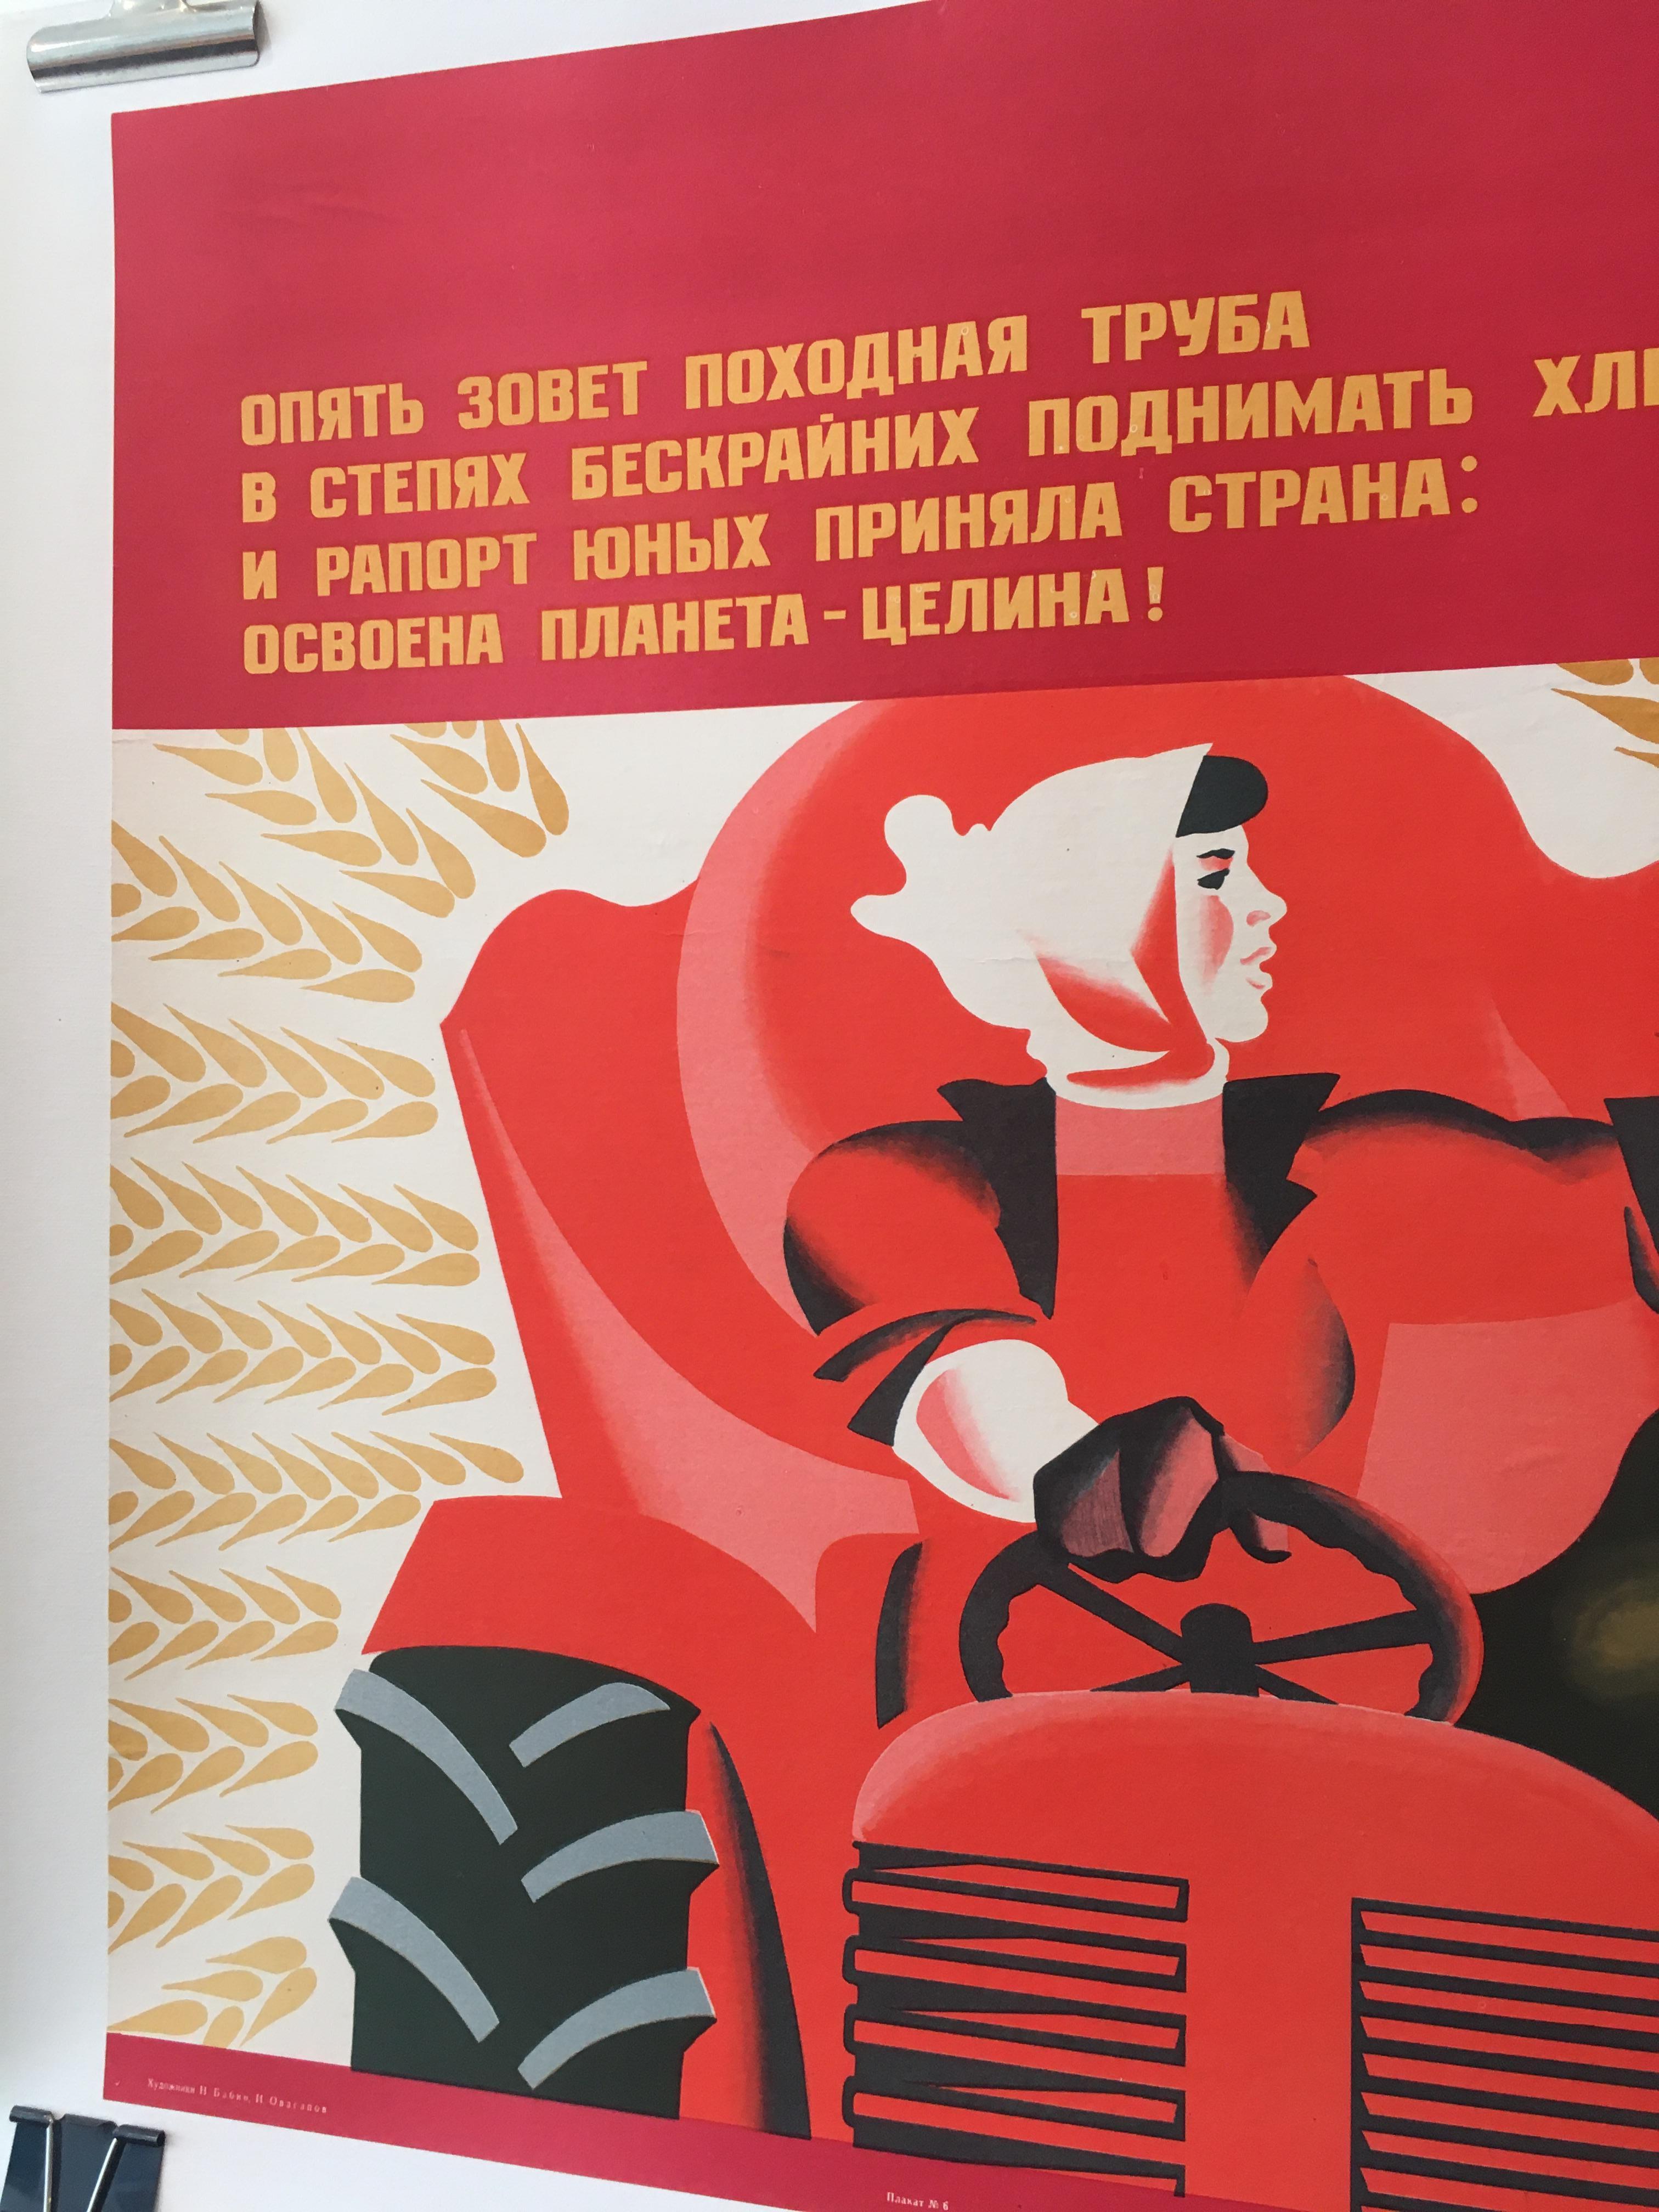 Originales politisches Vintage-Poster der Sowjetischen Union, Sowjetischen Union, 1974, Frau bei Tractor arbeitet (Ende des 20. Jahrhunderts) im Angebot